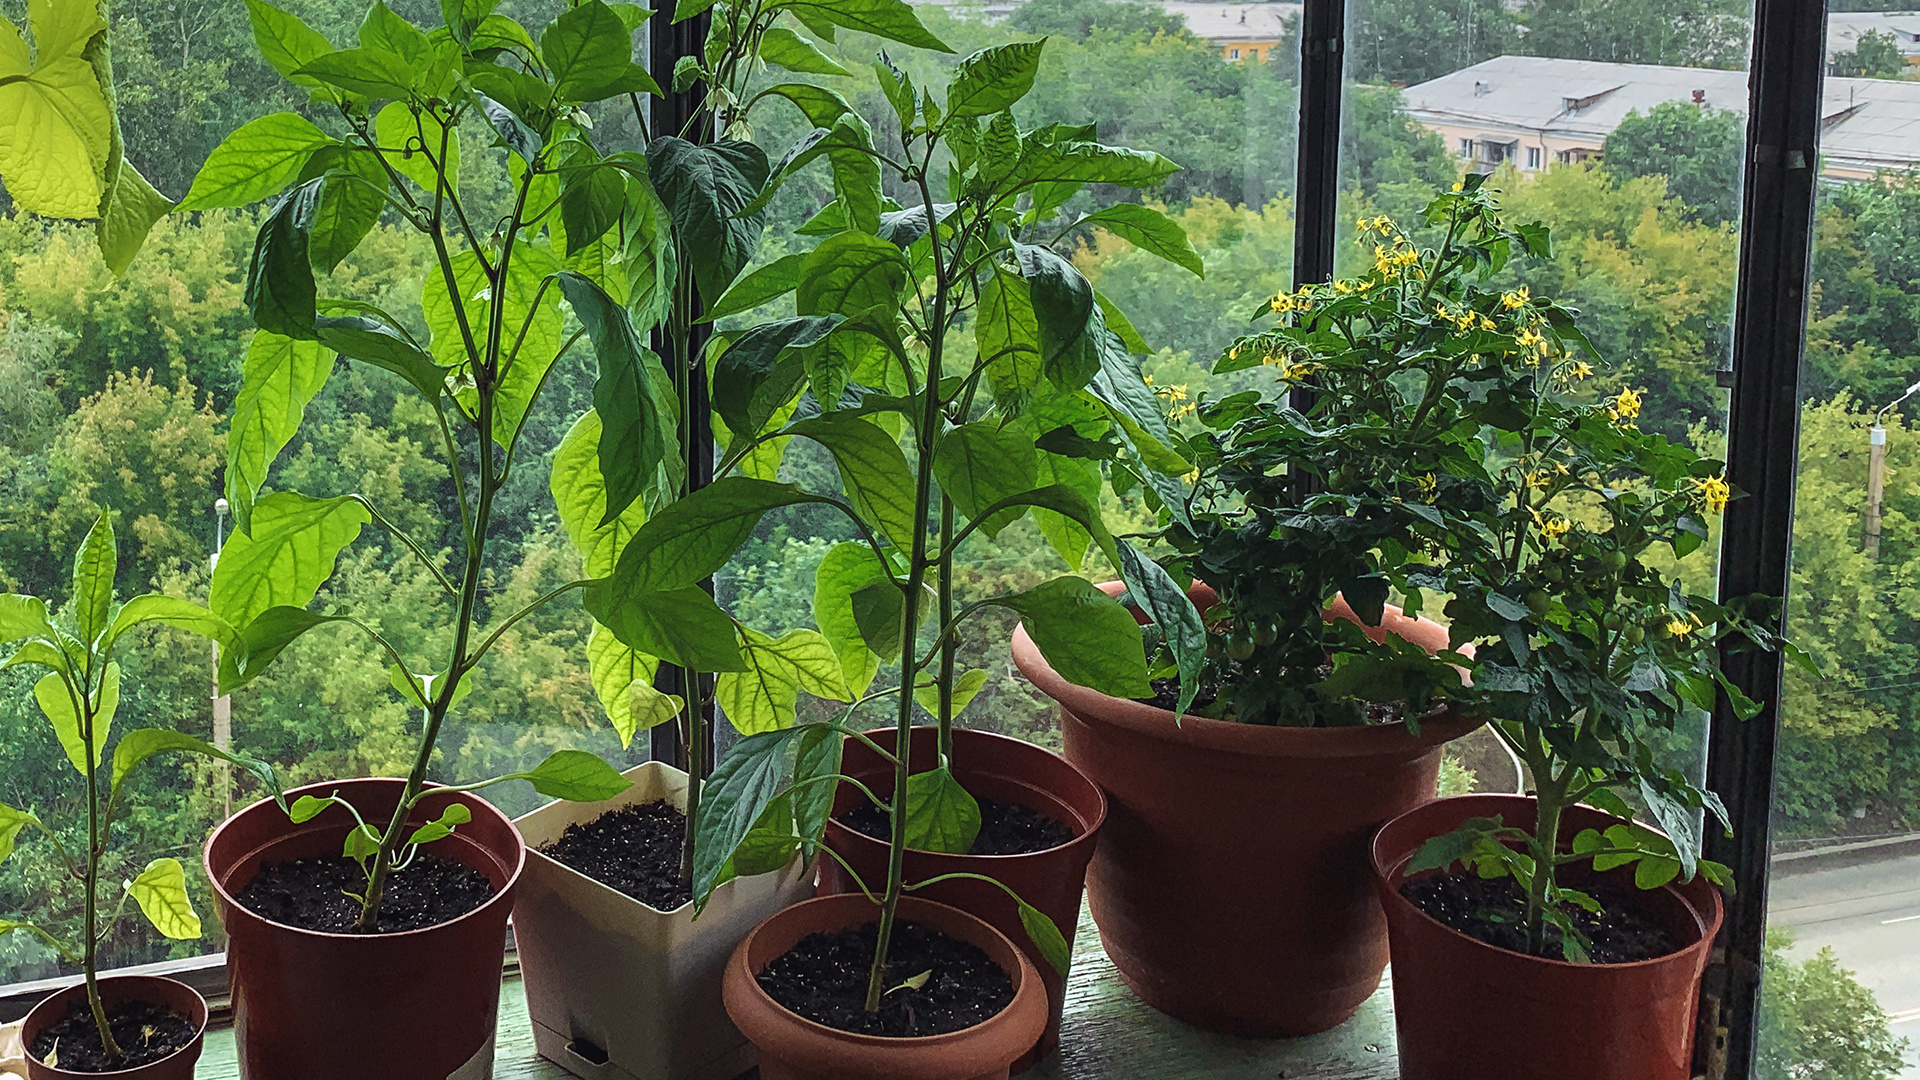 От микрозелени до картошки: что можно посадить дома прямо сейчас